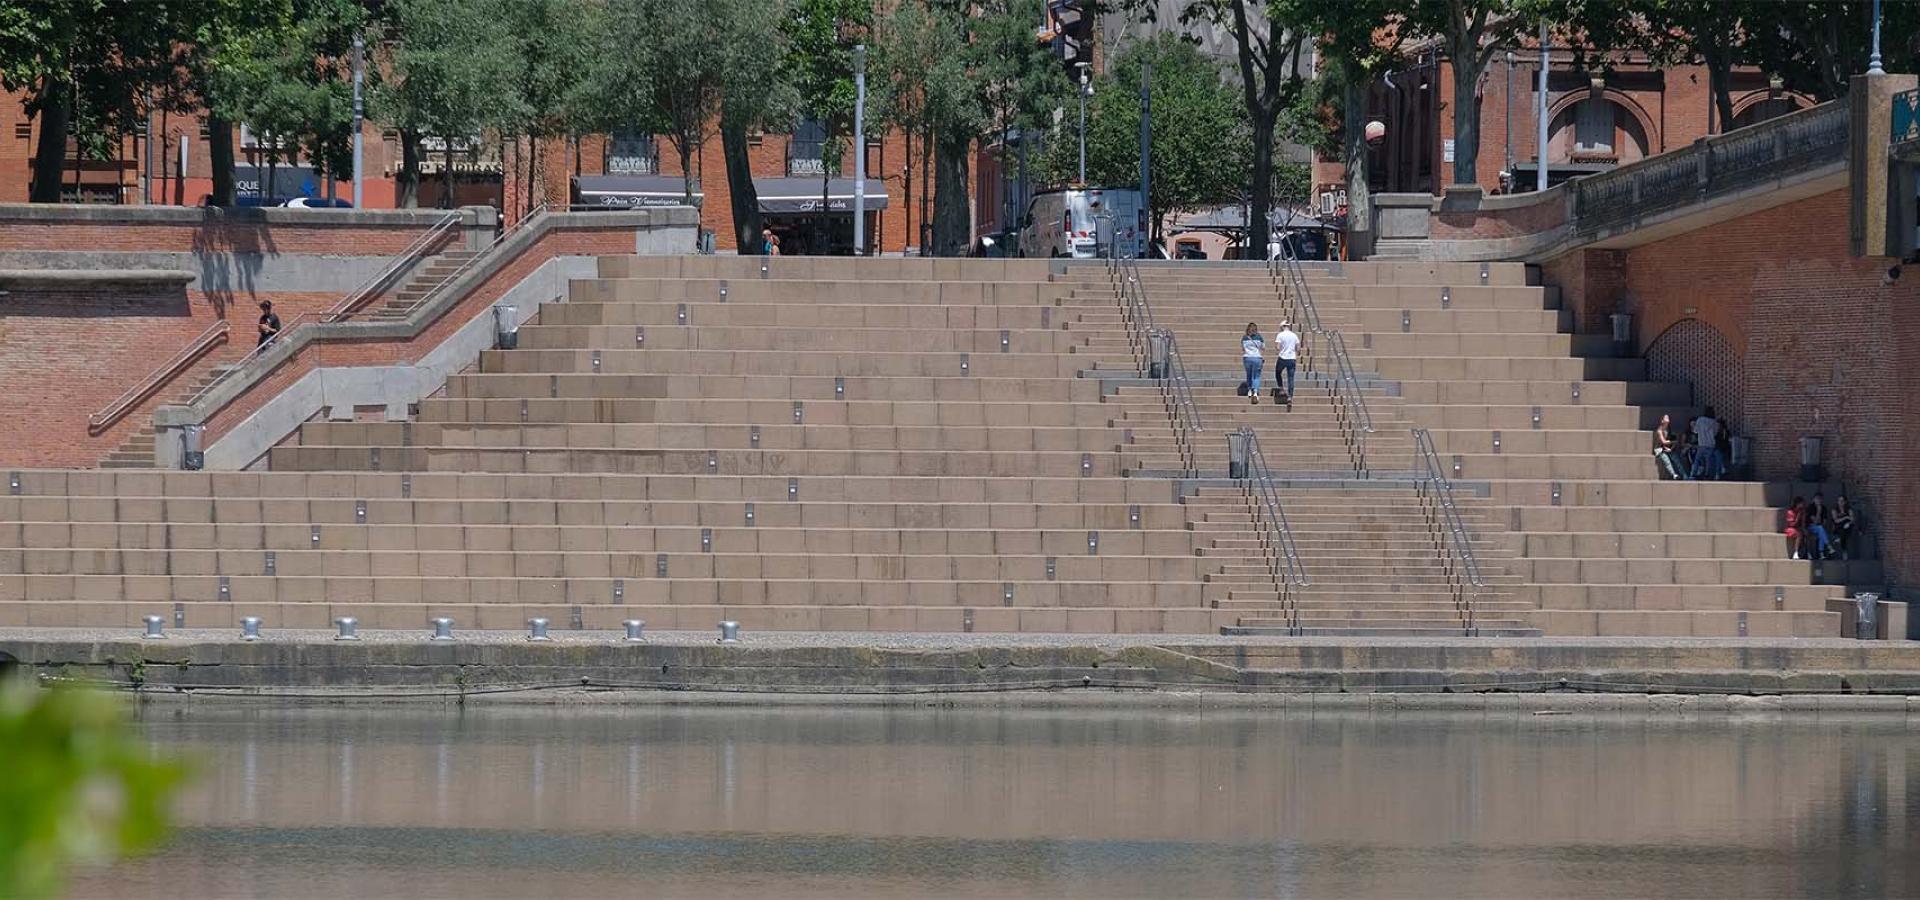 Décor tournage : les escaliers du quai Saint-Pierre en bord de Garonne à Toulouse